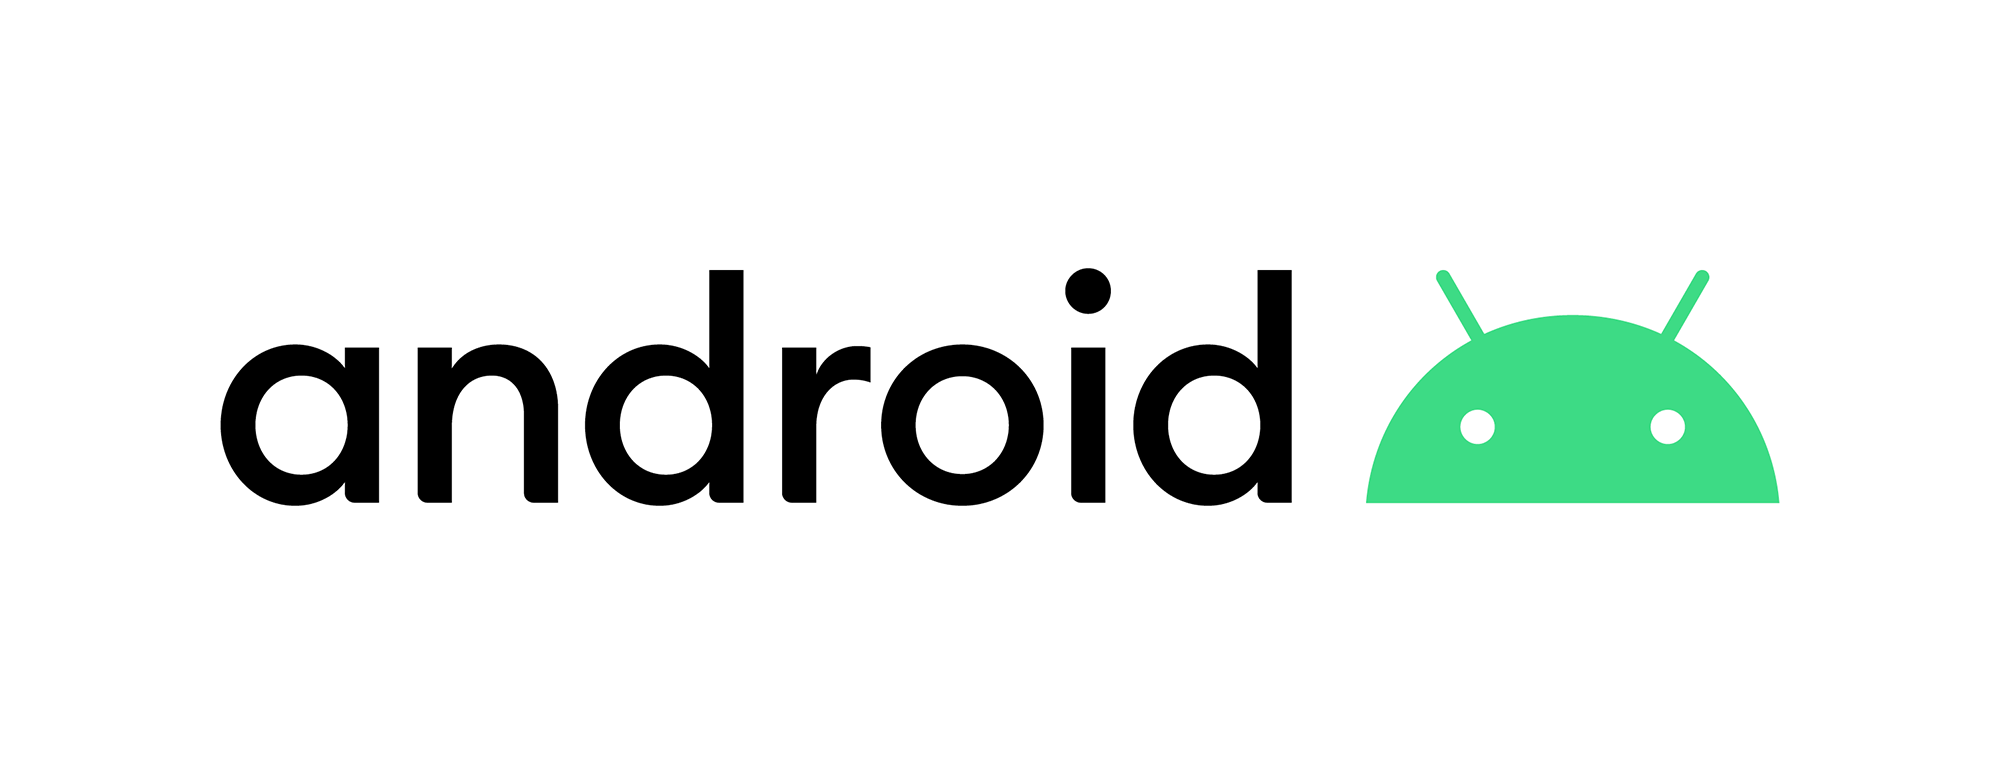 Bildresultat för android new logo